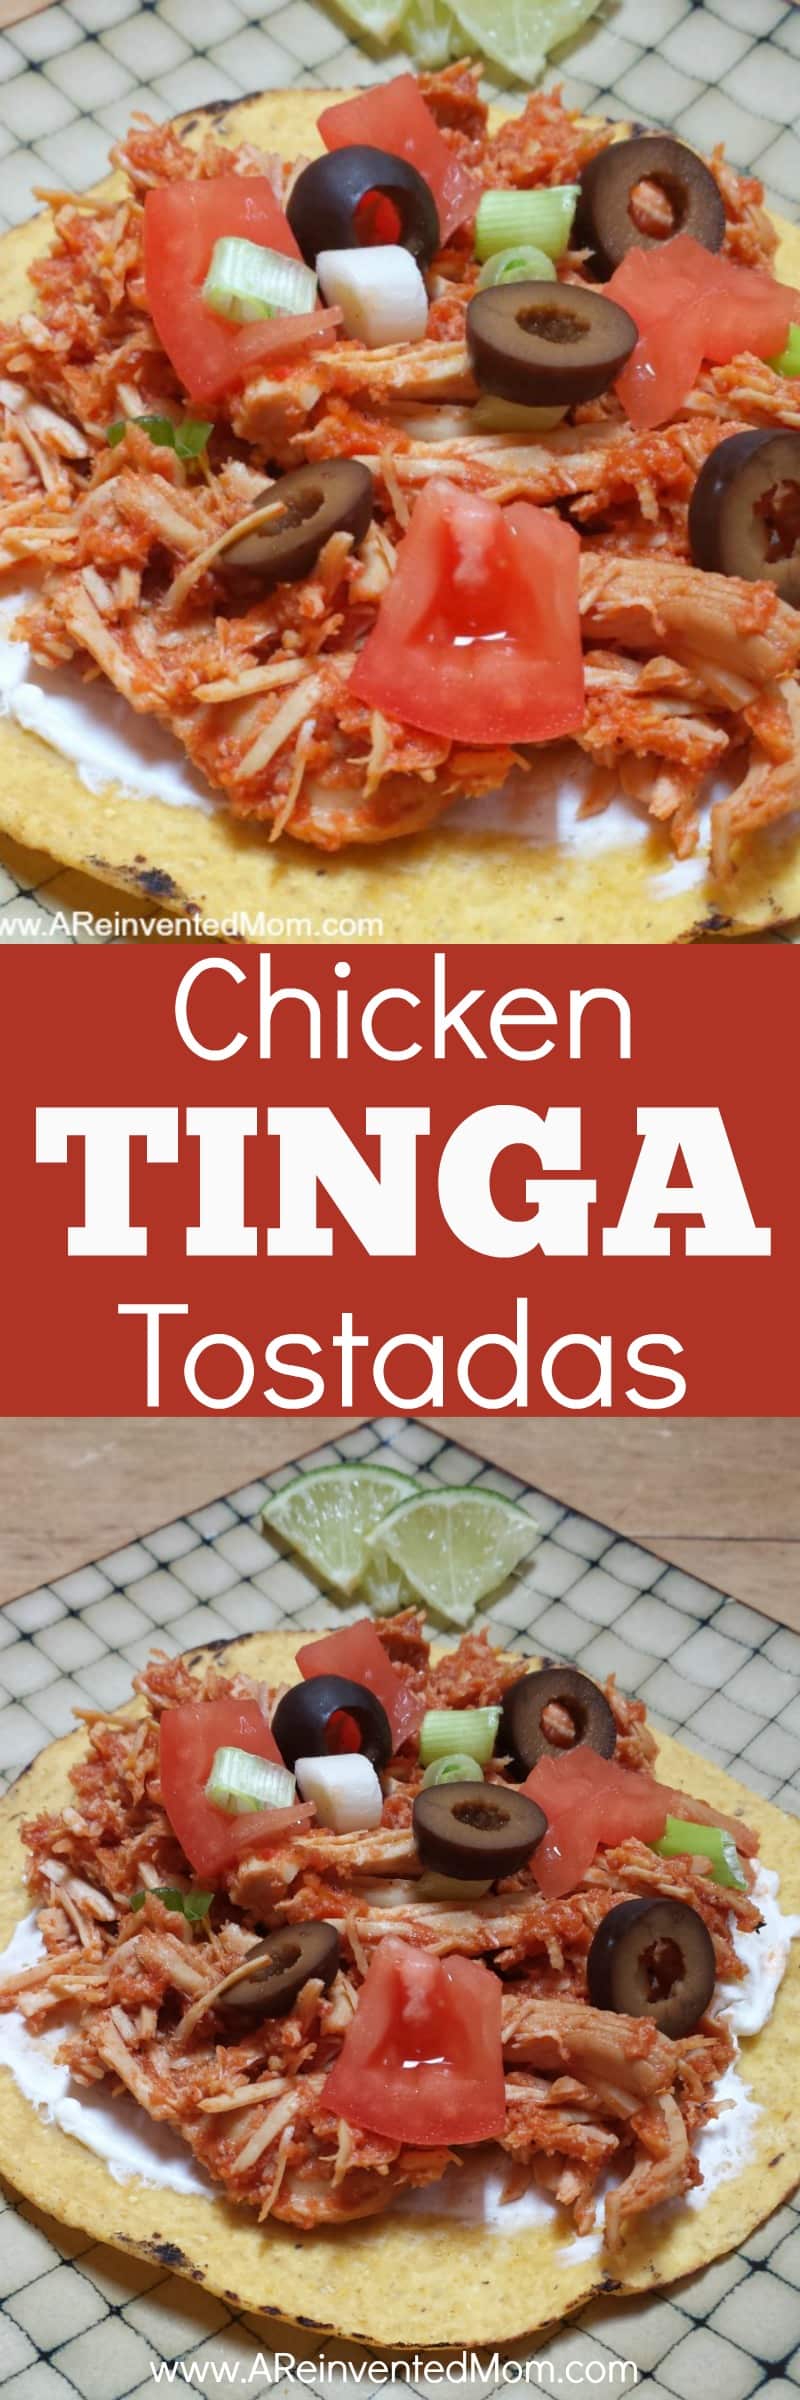 Chicken Tinga Tostadas - Pinterest | A Reinvented Mom